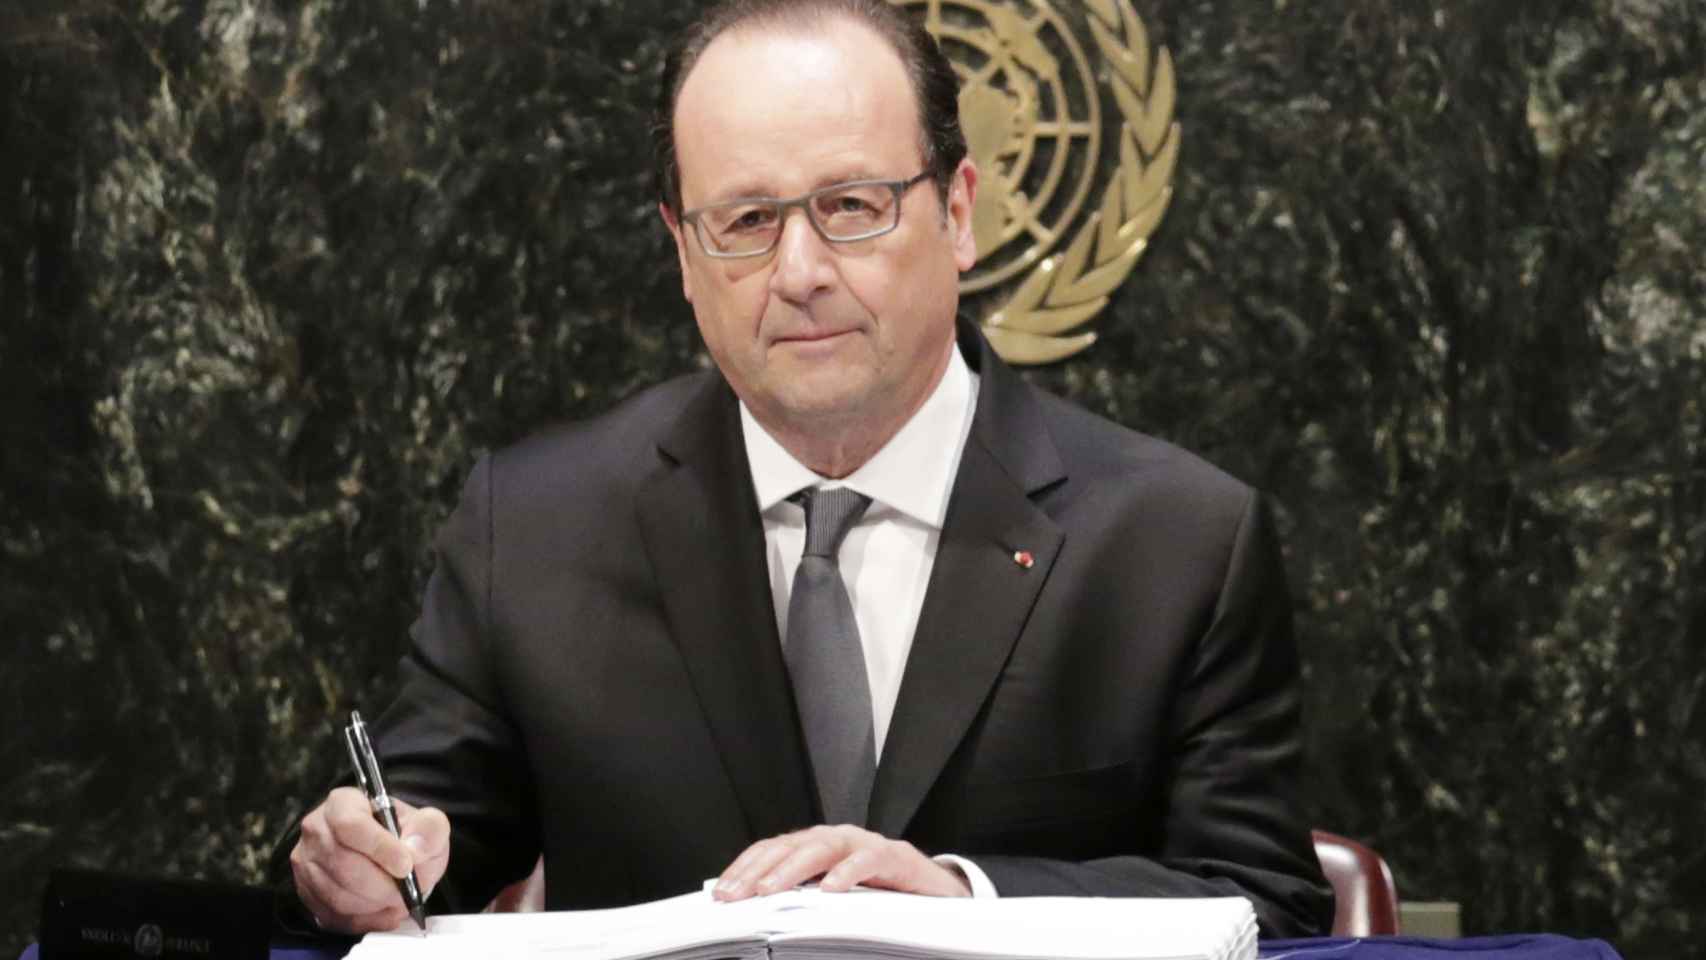 El presidente francés luce una peinada cabellera en cada uno de sus actos.